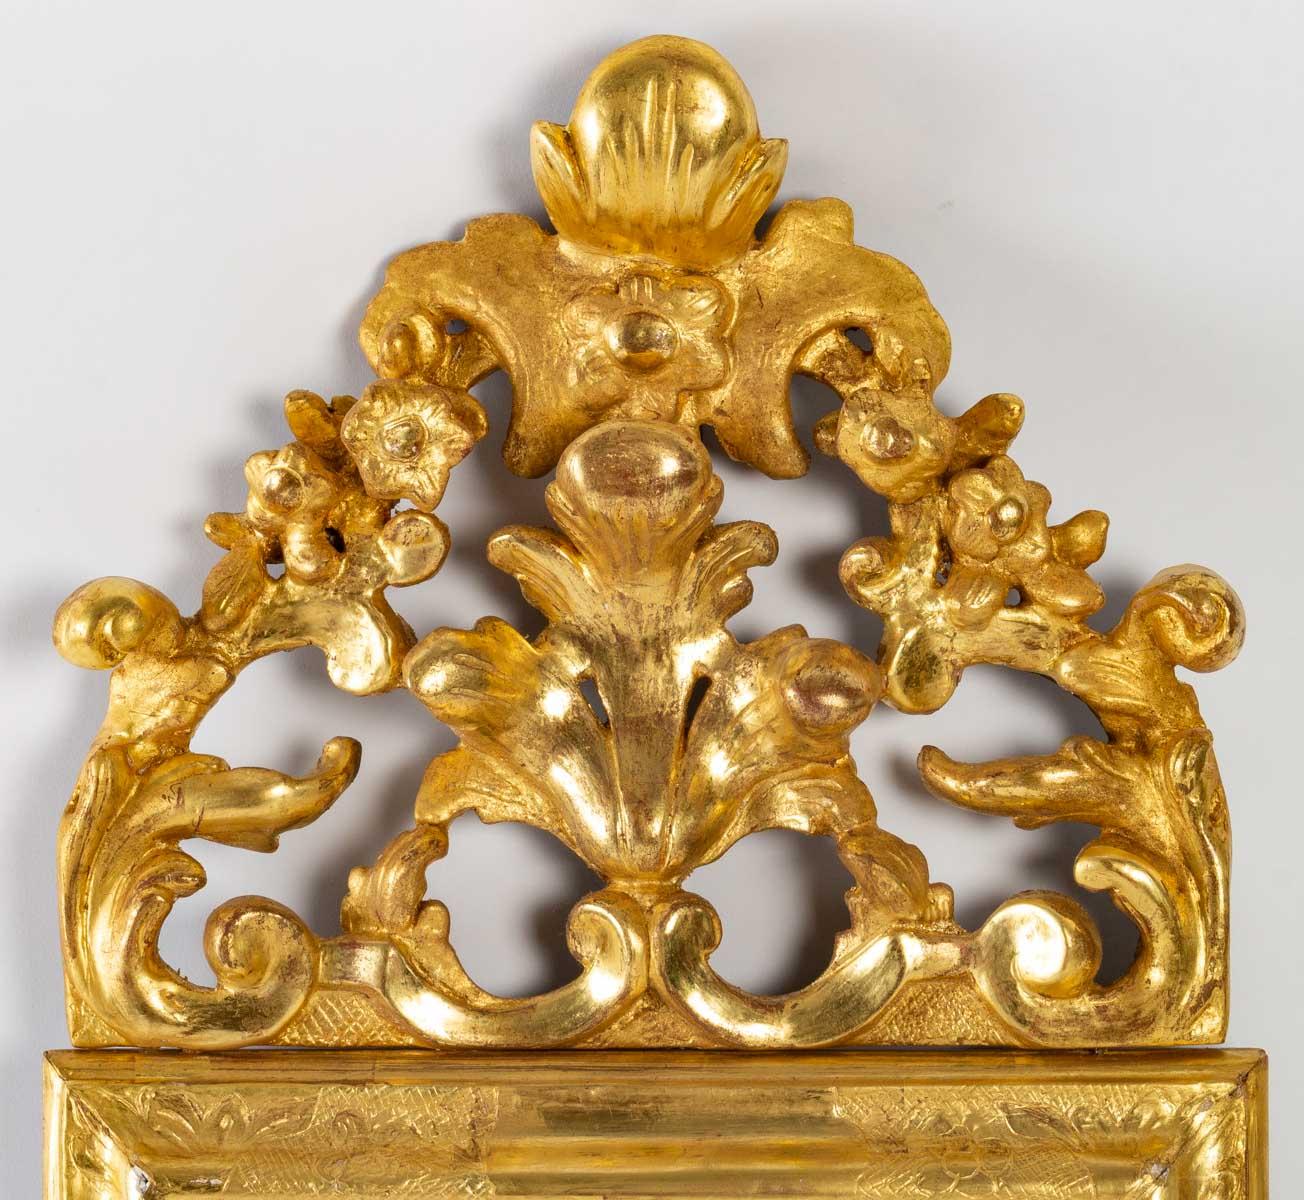 Schöner kleiner Spiegel aus geschnitztem Holz, vergoldet mit 24 Karat Blattgold, Louis XV Periode, altes Quecksilbereis. Der Giebel ist durchbrochen mit Muschel- und Akanthusblattmustern, und der schlichte Rahmen weist nur an den Ecken eine